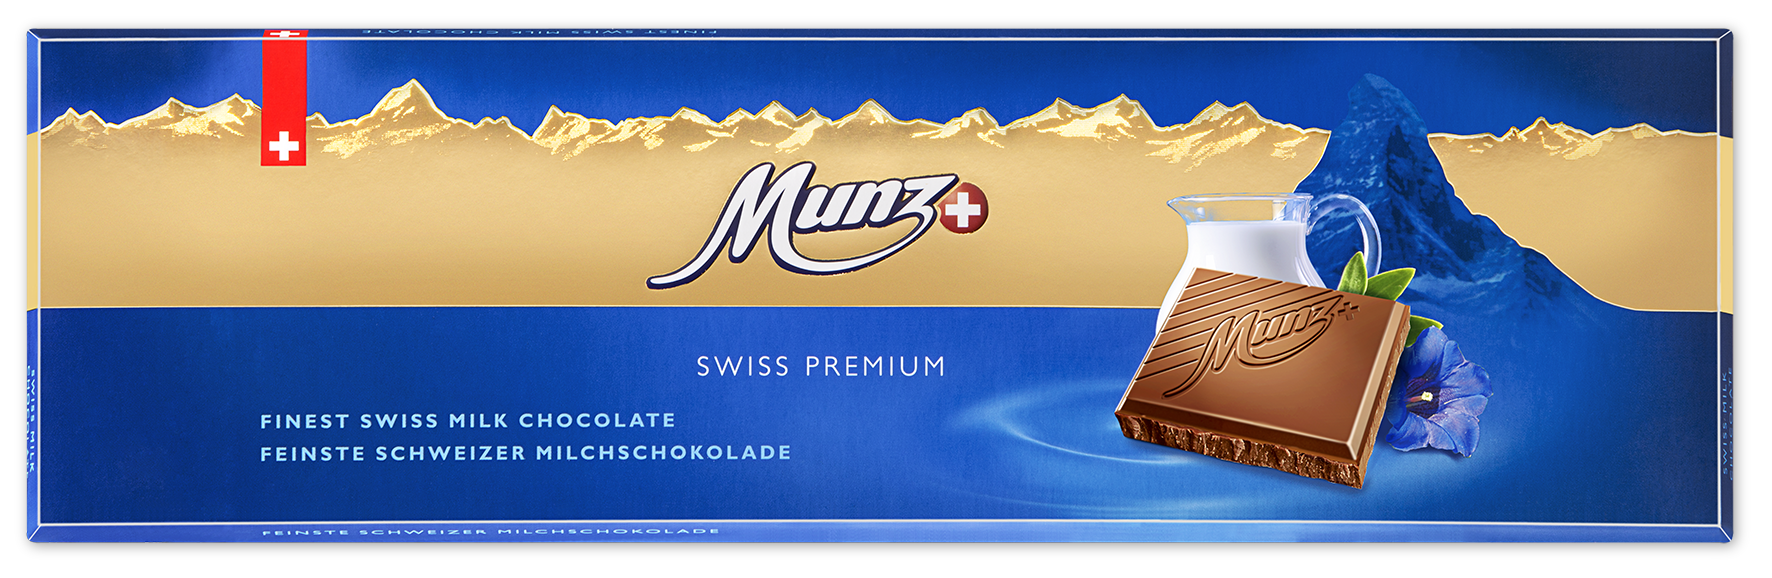 08100 Swiss Premium Milch 300g front